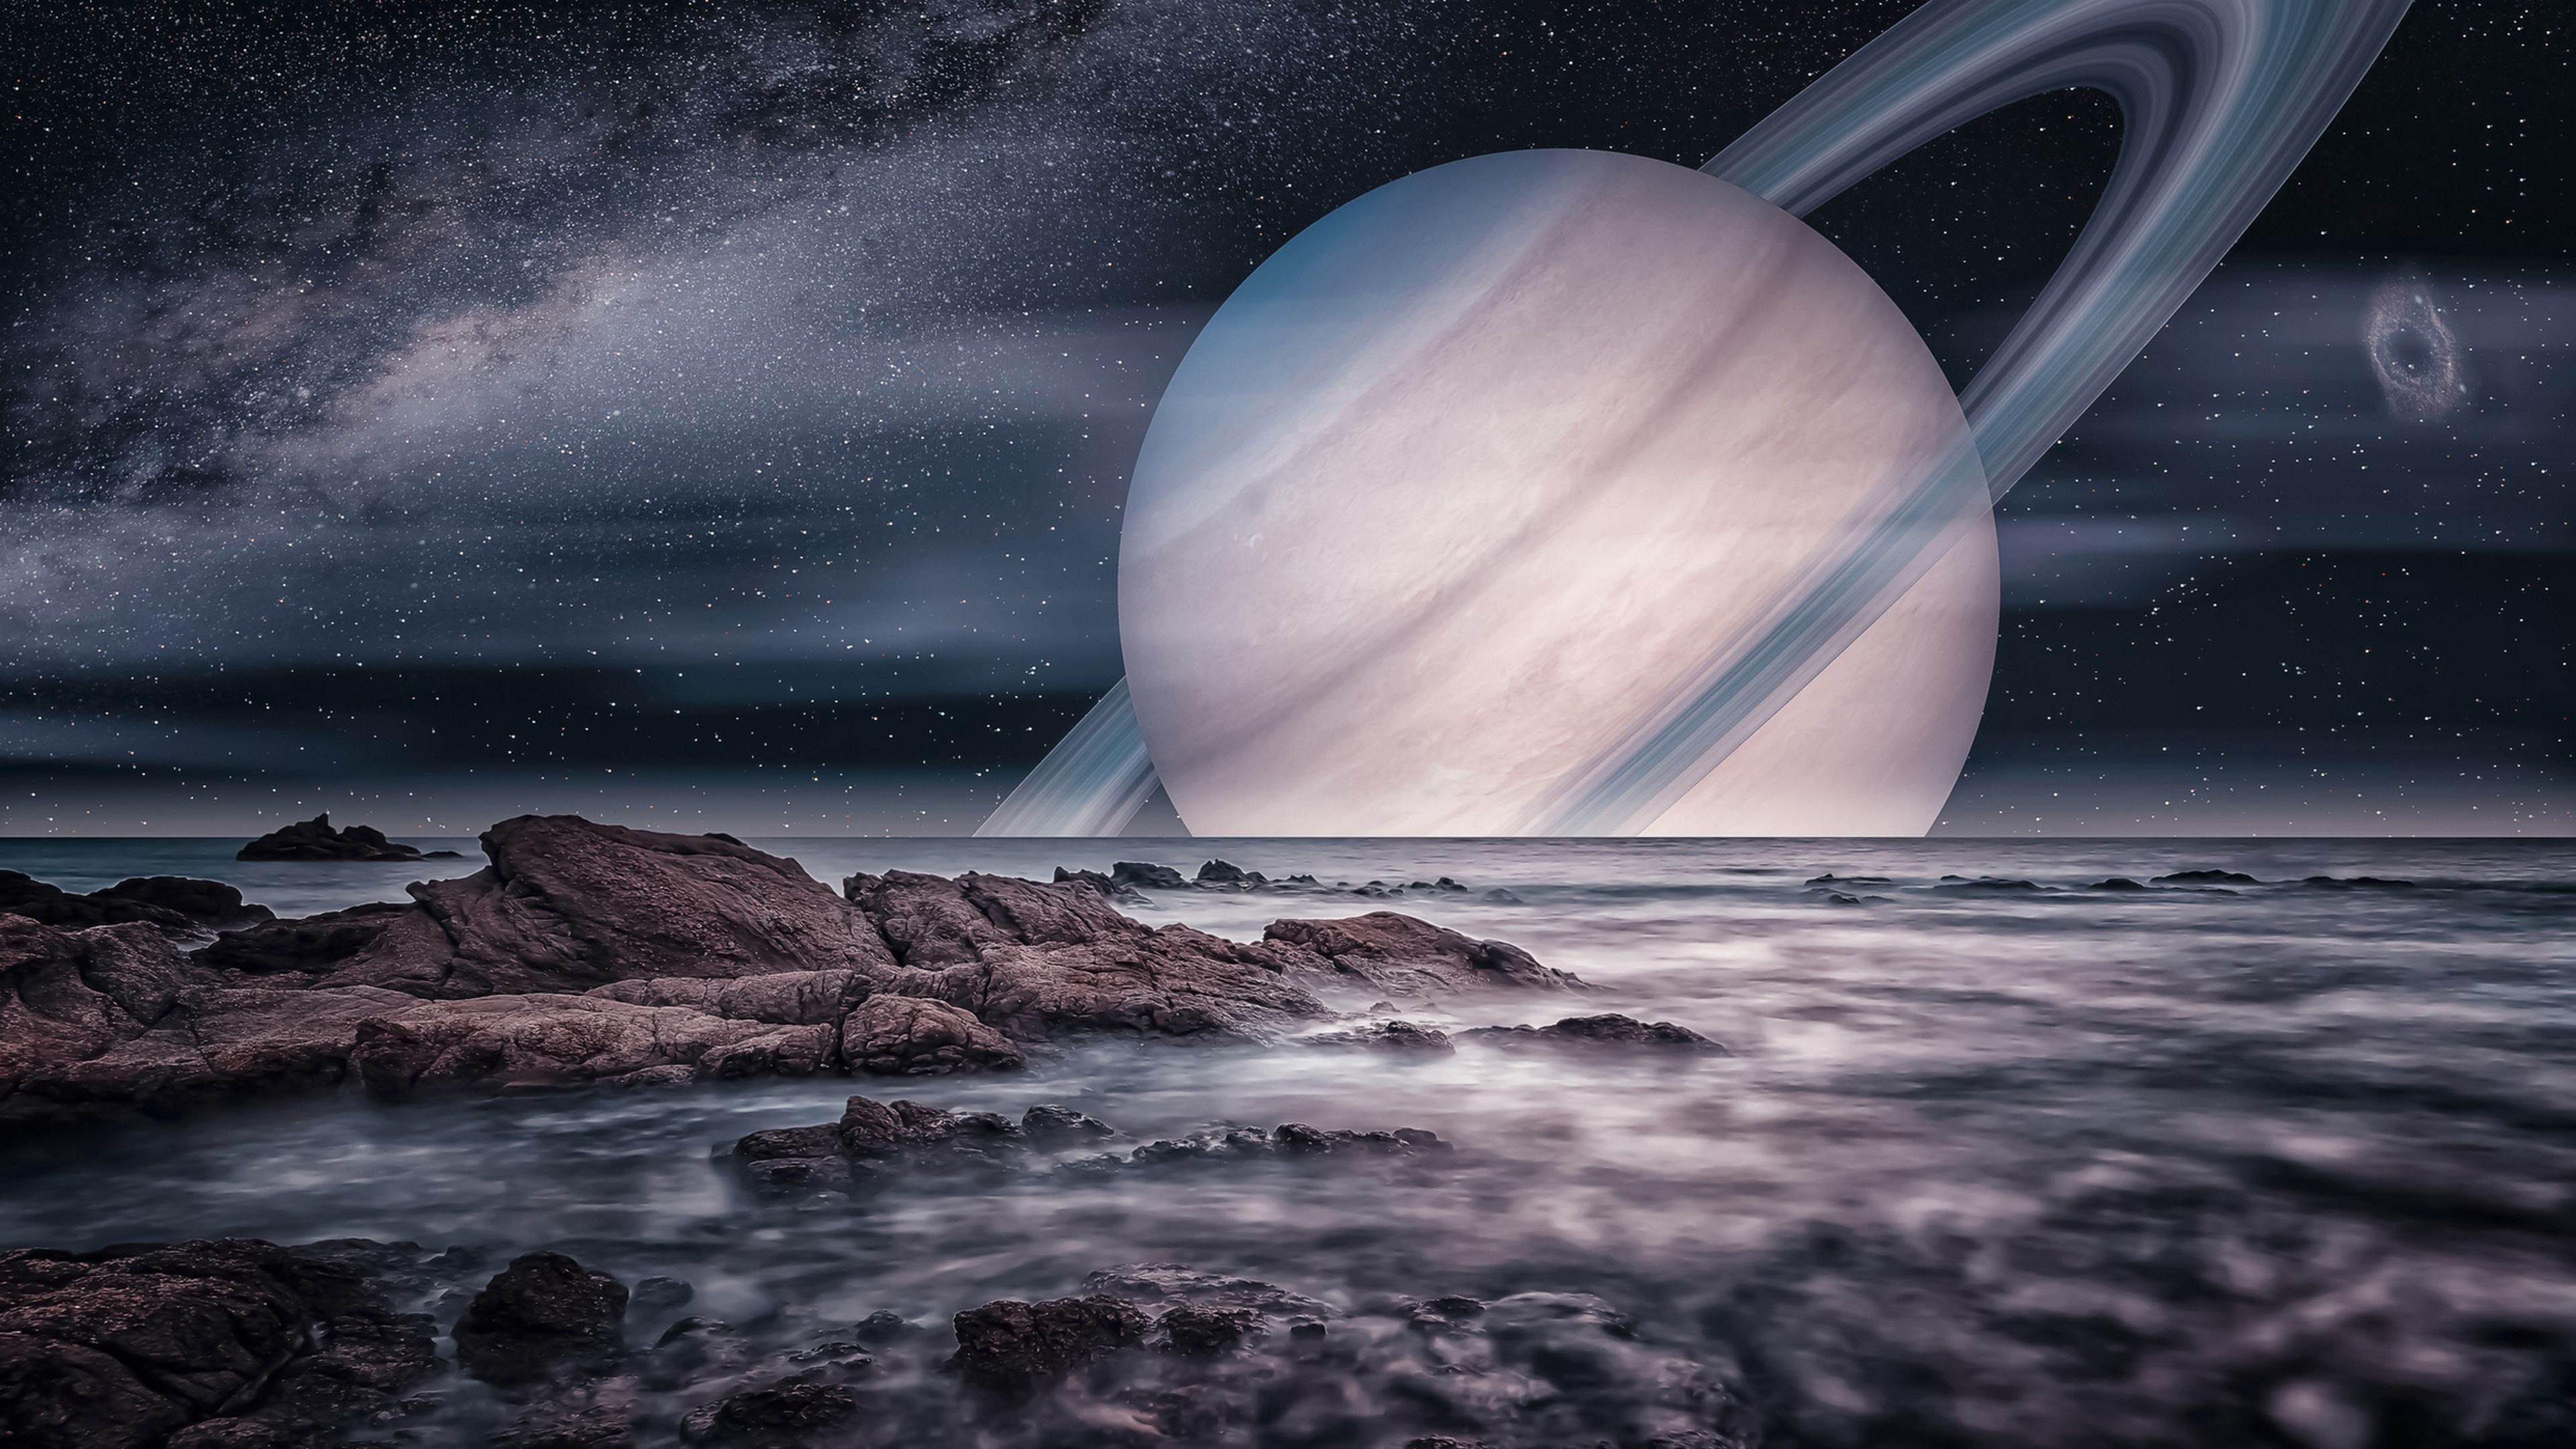 El telescopio James Webb es tan potente que puede ver las nubes y el mar de la luna Titán de Saturno